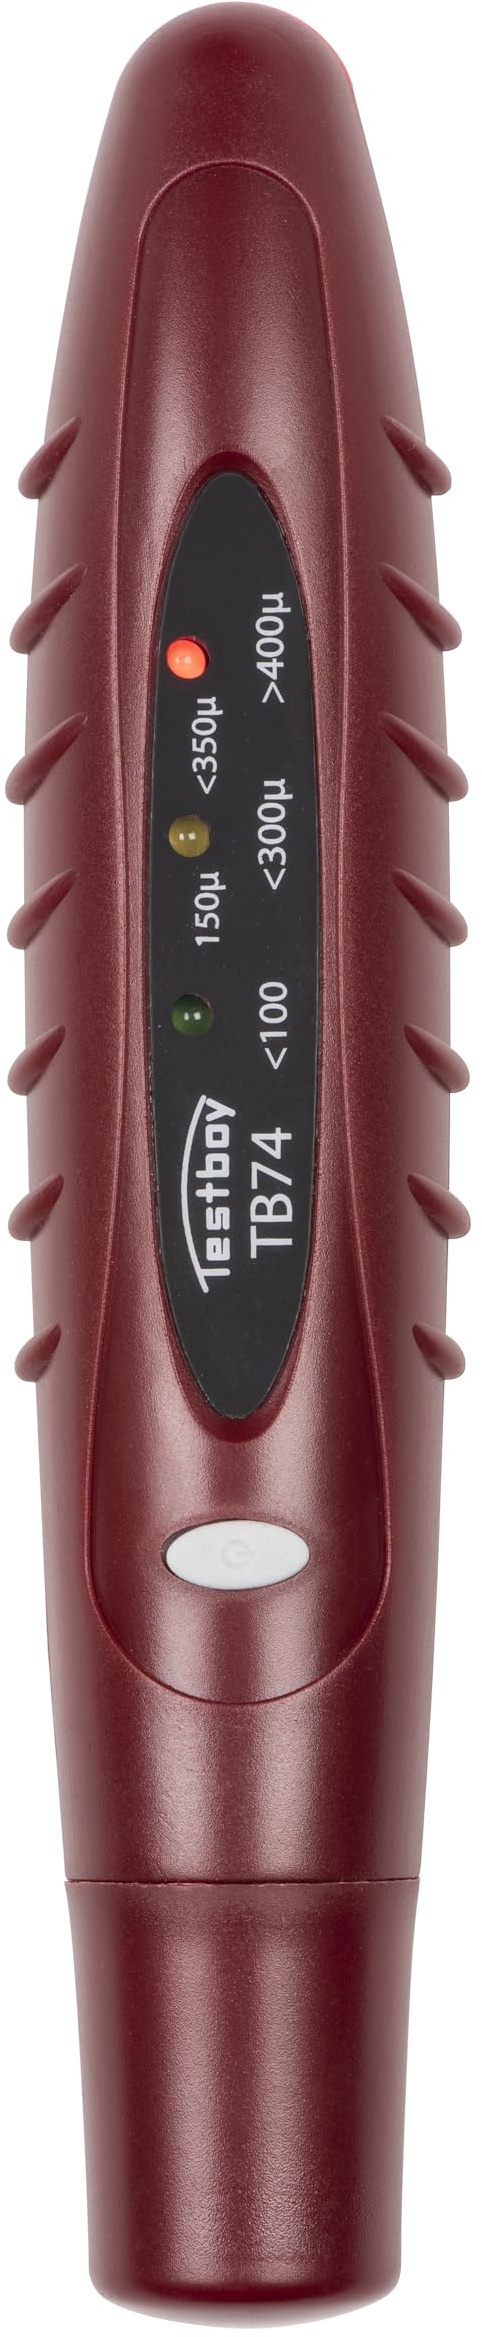 Testboy 74 Schichtdickentester mit LED-Anzeige (für nicht-magnetische Untergründe, übersichtliche LED-Anzeige, schnelle und unkomplizierte Überprüfung von Fahrzeuglacke), Rot